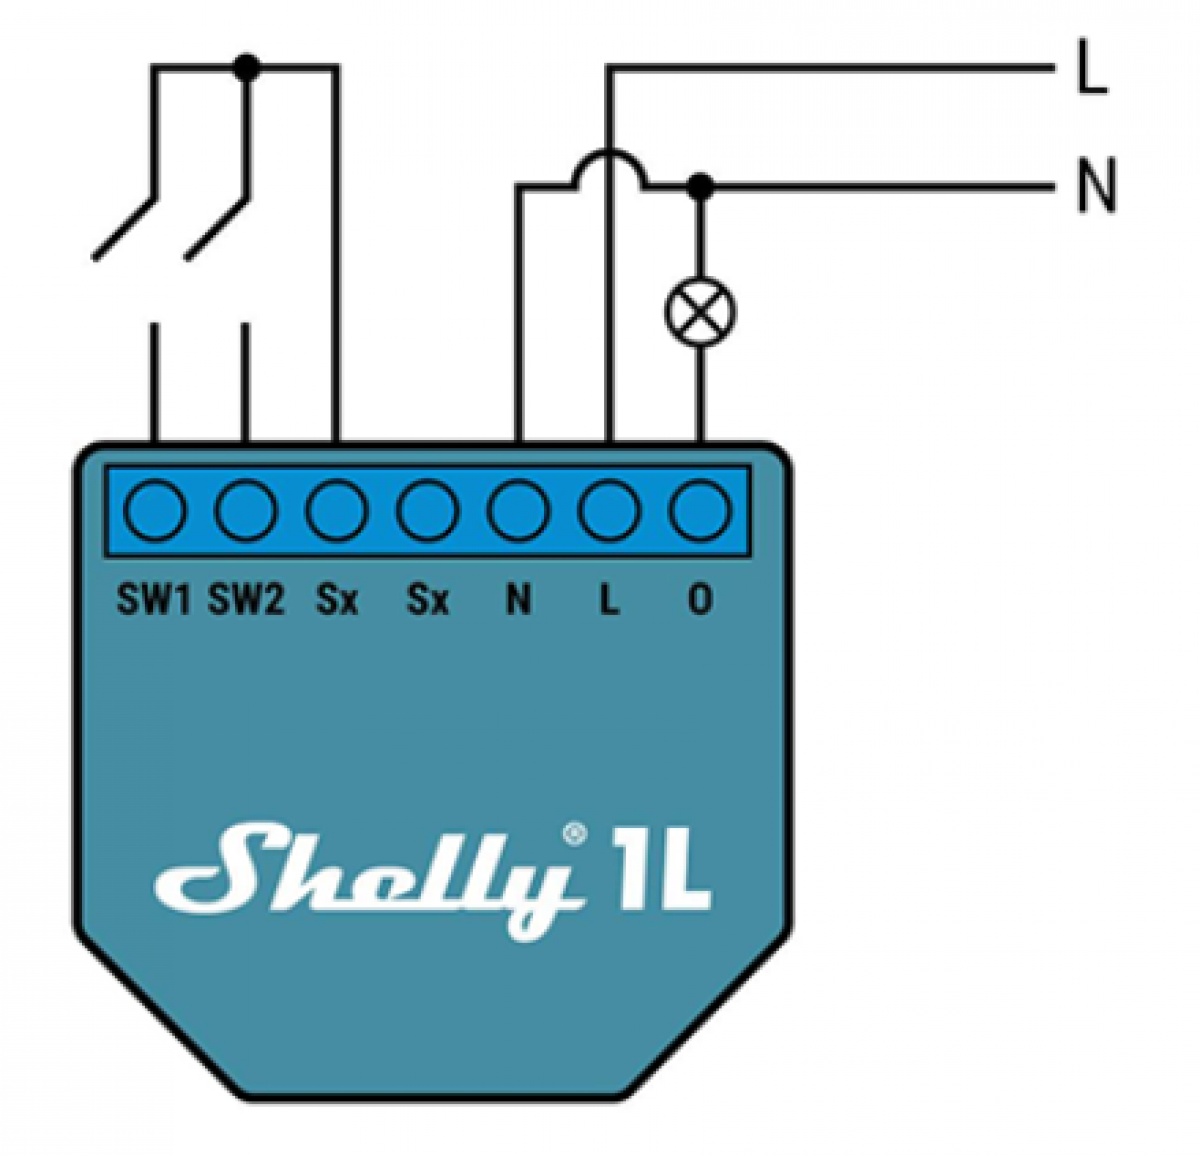 Shelly® Bypass Modul für Shelly® 1L und Shelly® Dimmer